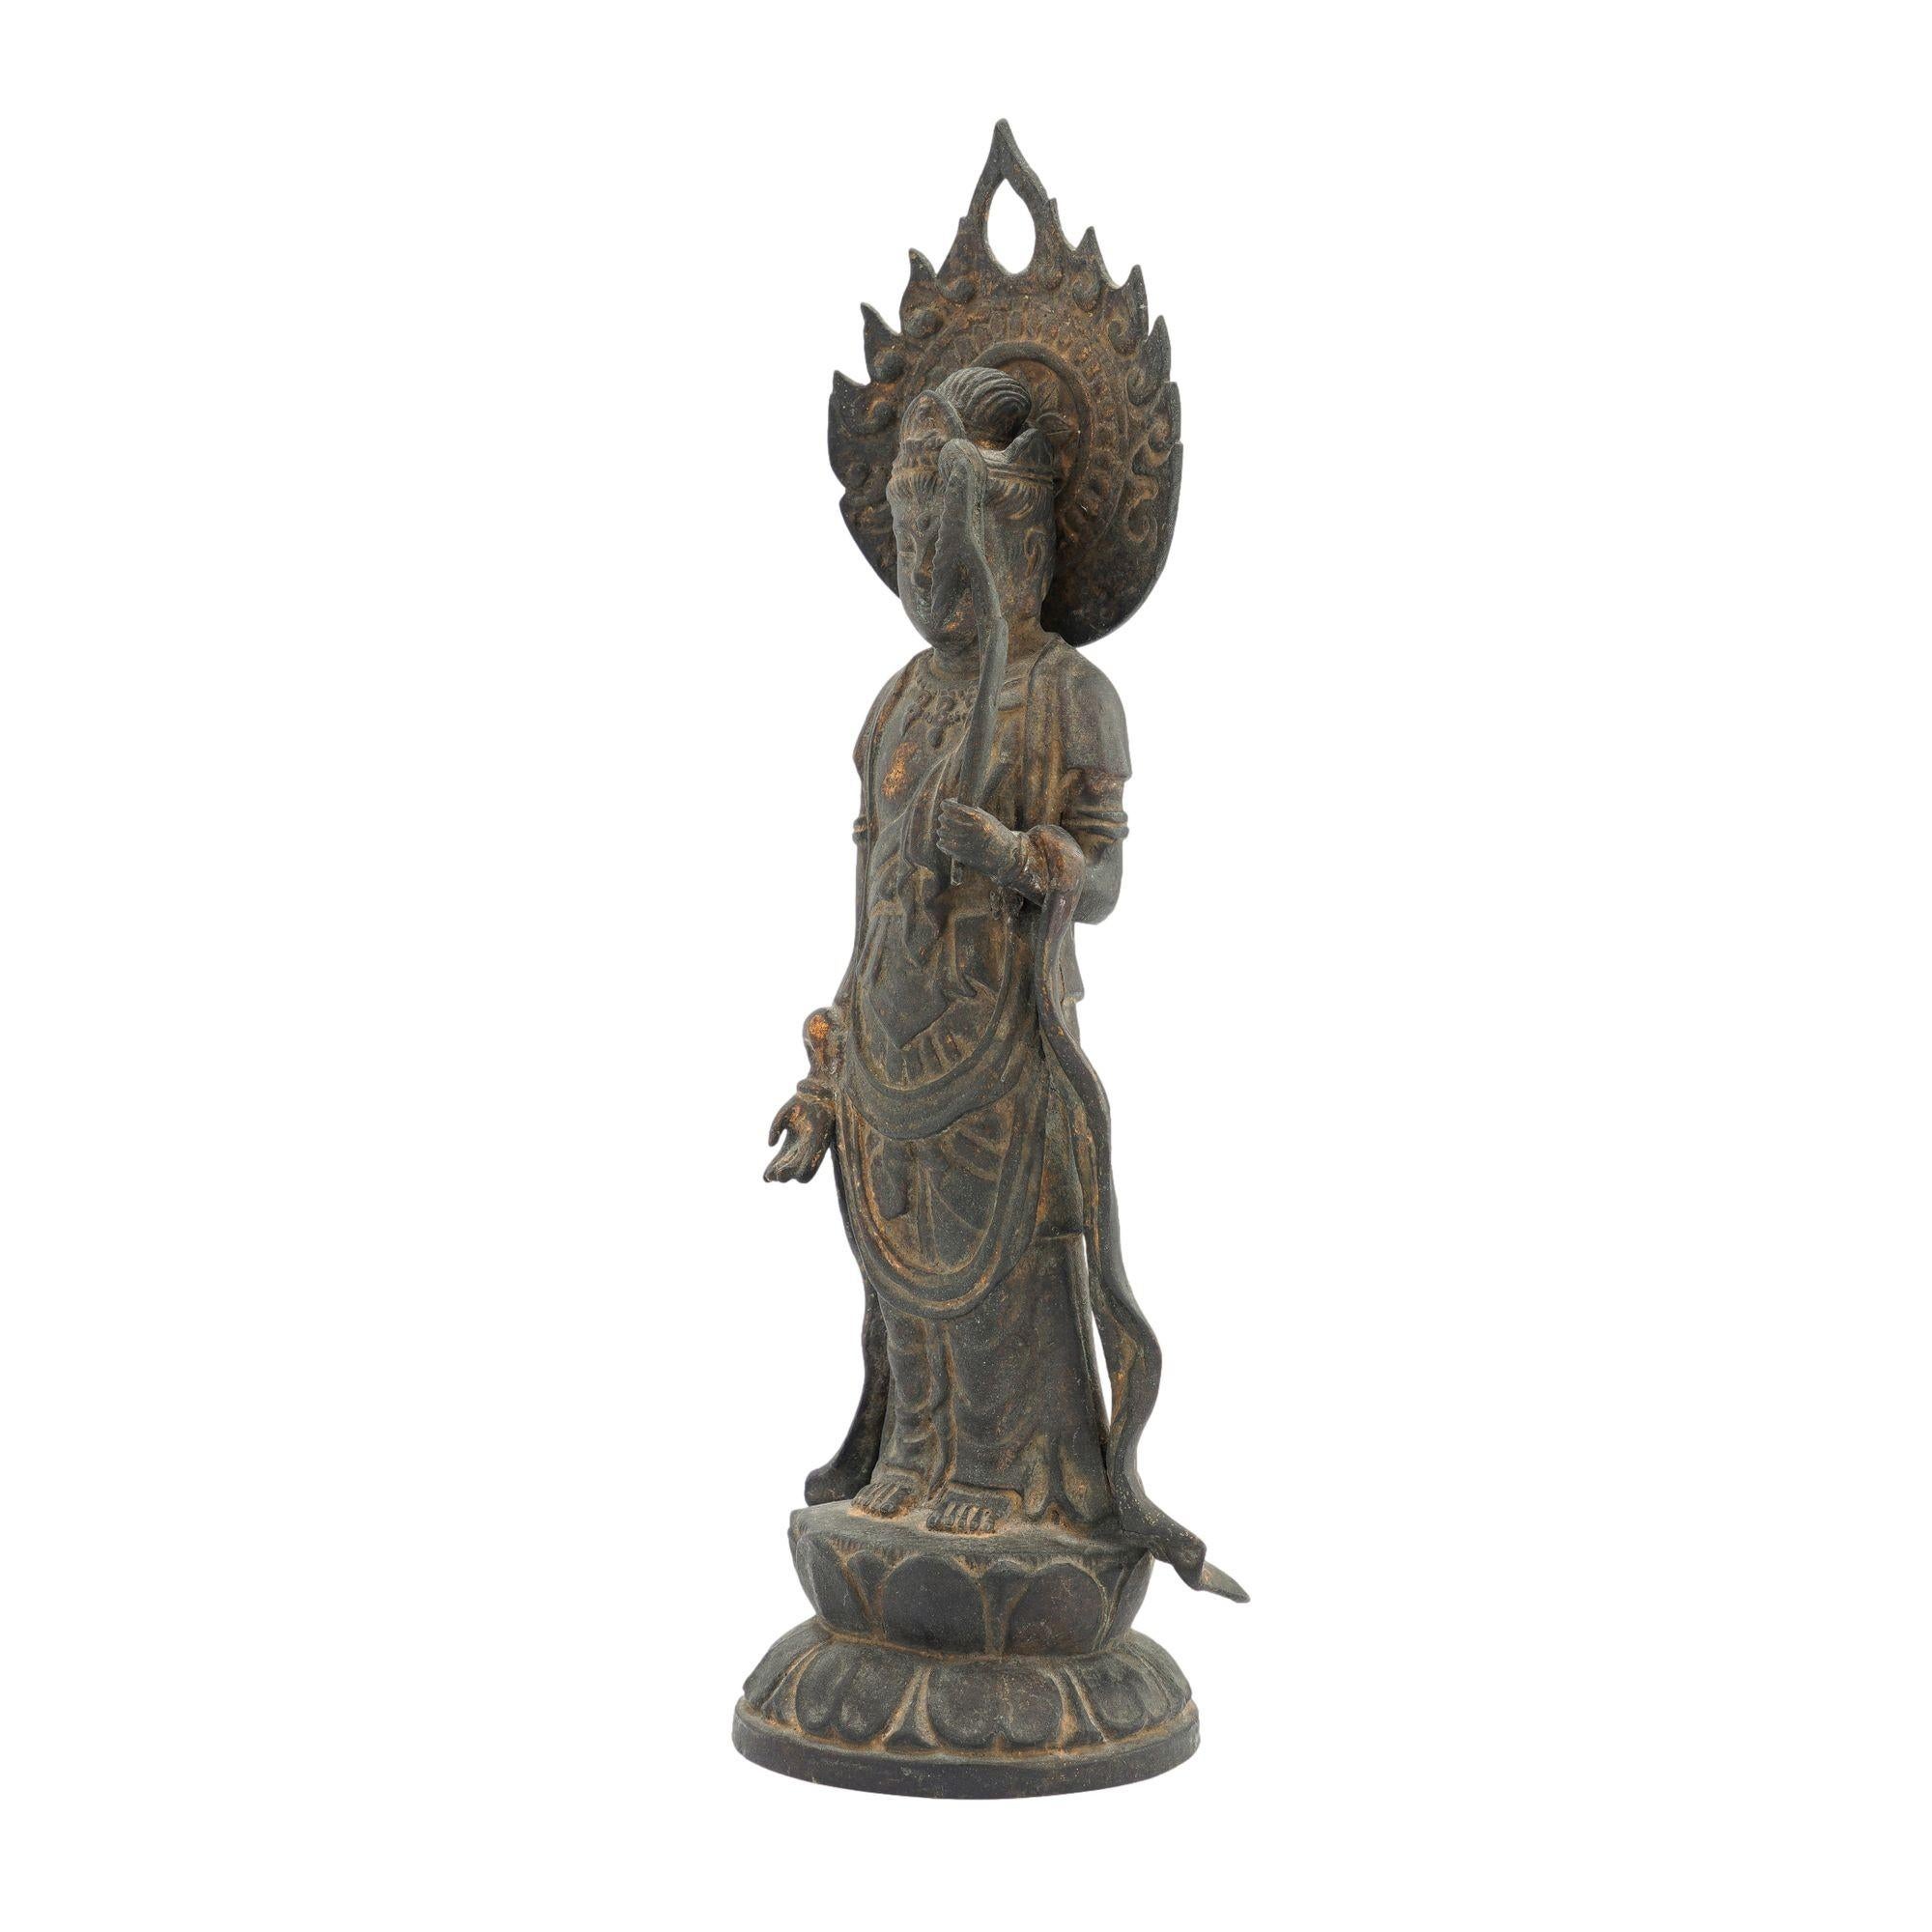 Gegossene Bronzestatue einer halb drapierten Figur des stehenden Bodhisattva auf einem Lotussockel, mit einem abnehmbaren Flammennimbus um den Kopf. Die Figur hält einen Lotus, das Symbol für Reinheit und Weltabgewandtheit, in der erhobenen linken